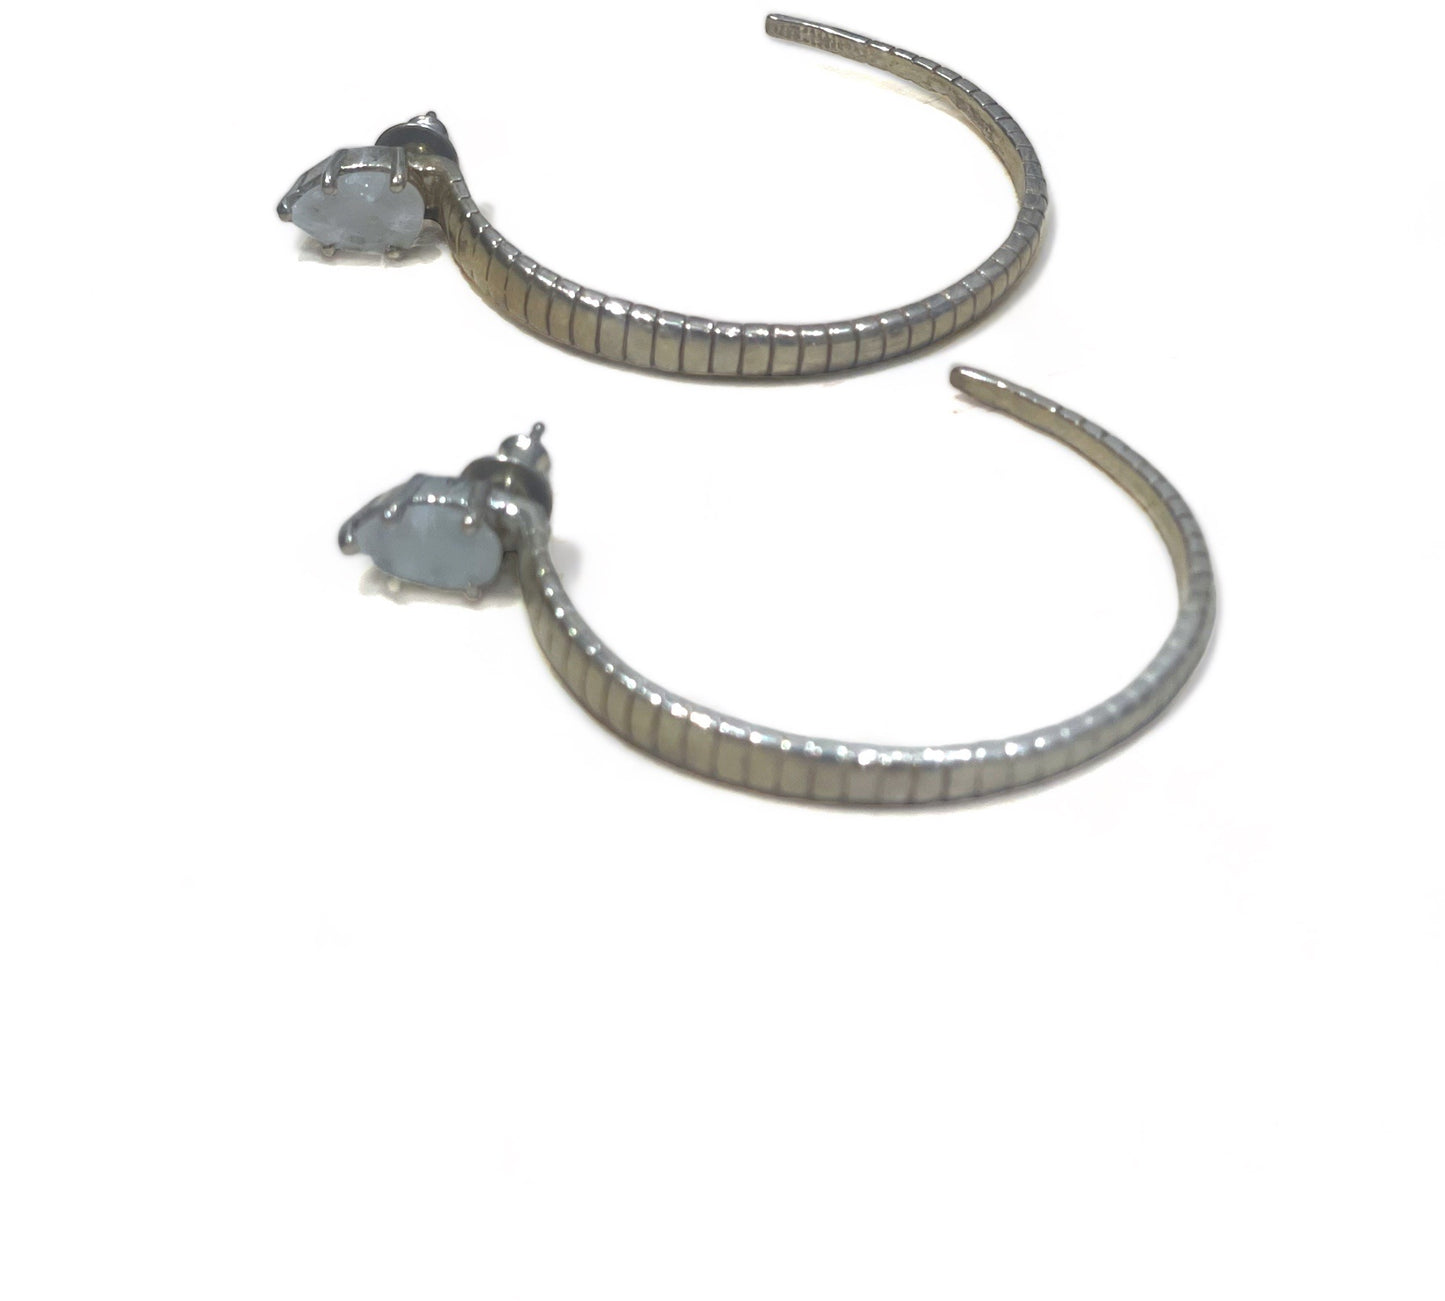 Sterling Silver Serpent Hoop Earrings by Jacqueline Rose